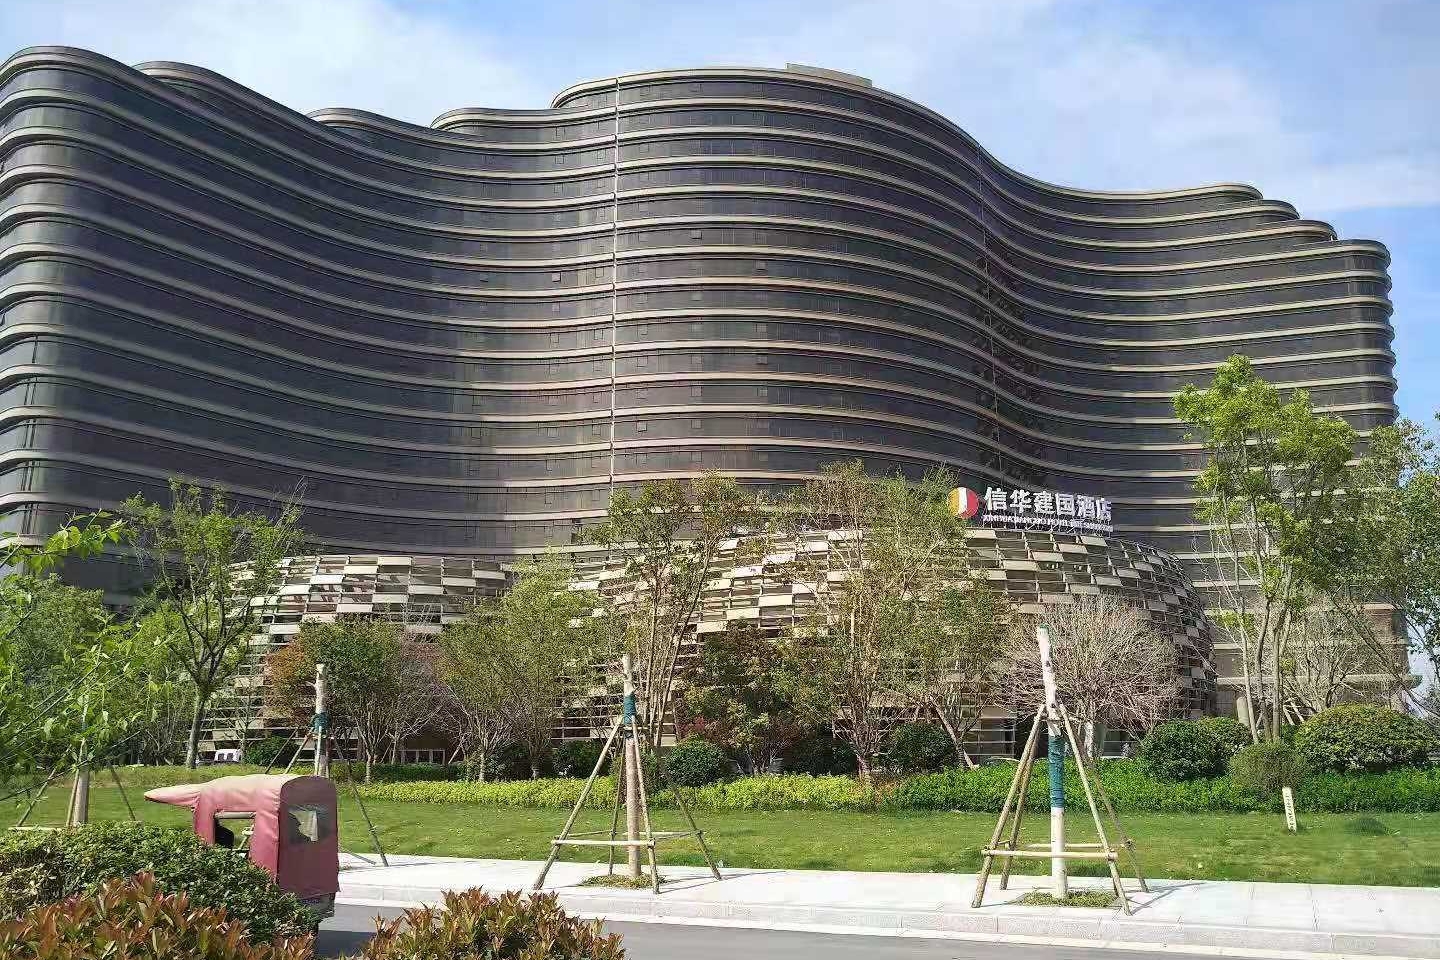 2019年4月 埃塞俄比亚医疗座谈会(商丘站)在信华建国酒店召开